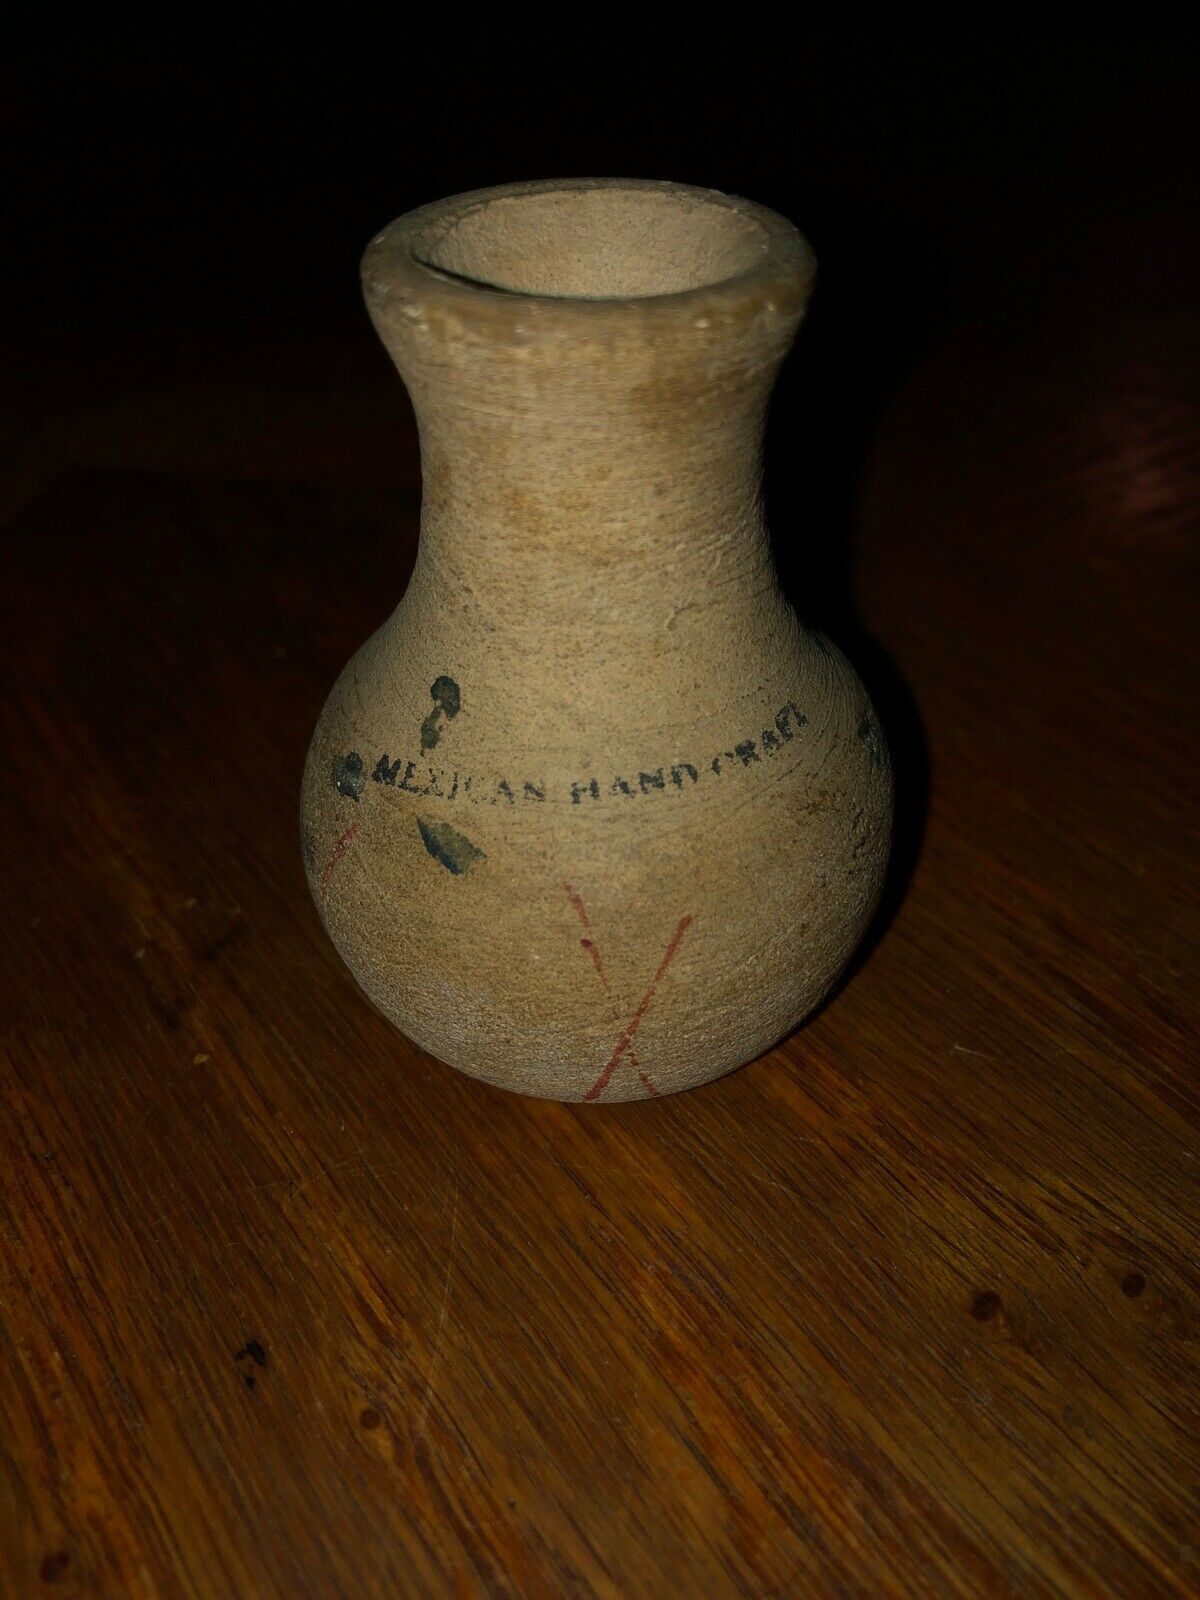 2” Mexican Handcrafted Pottery Vase Bottle Primitive Souvenir Mini Vtg